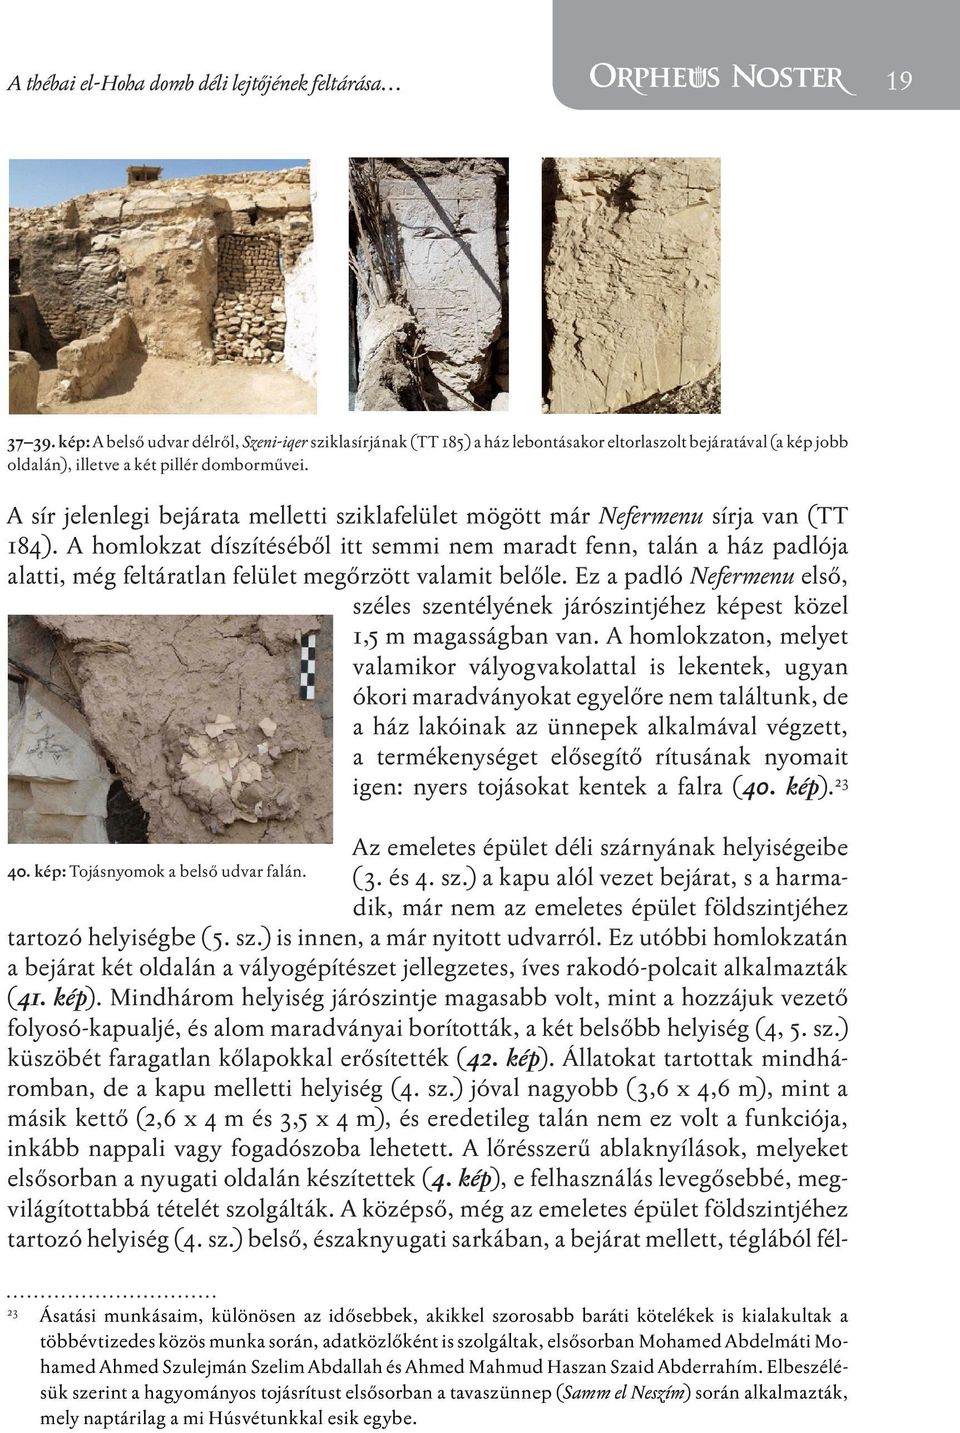 A sír jelenlegi bejárata melletti sziklafelület mögött már Nefermenu sírja van (TT 184).